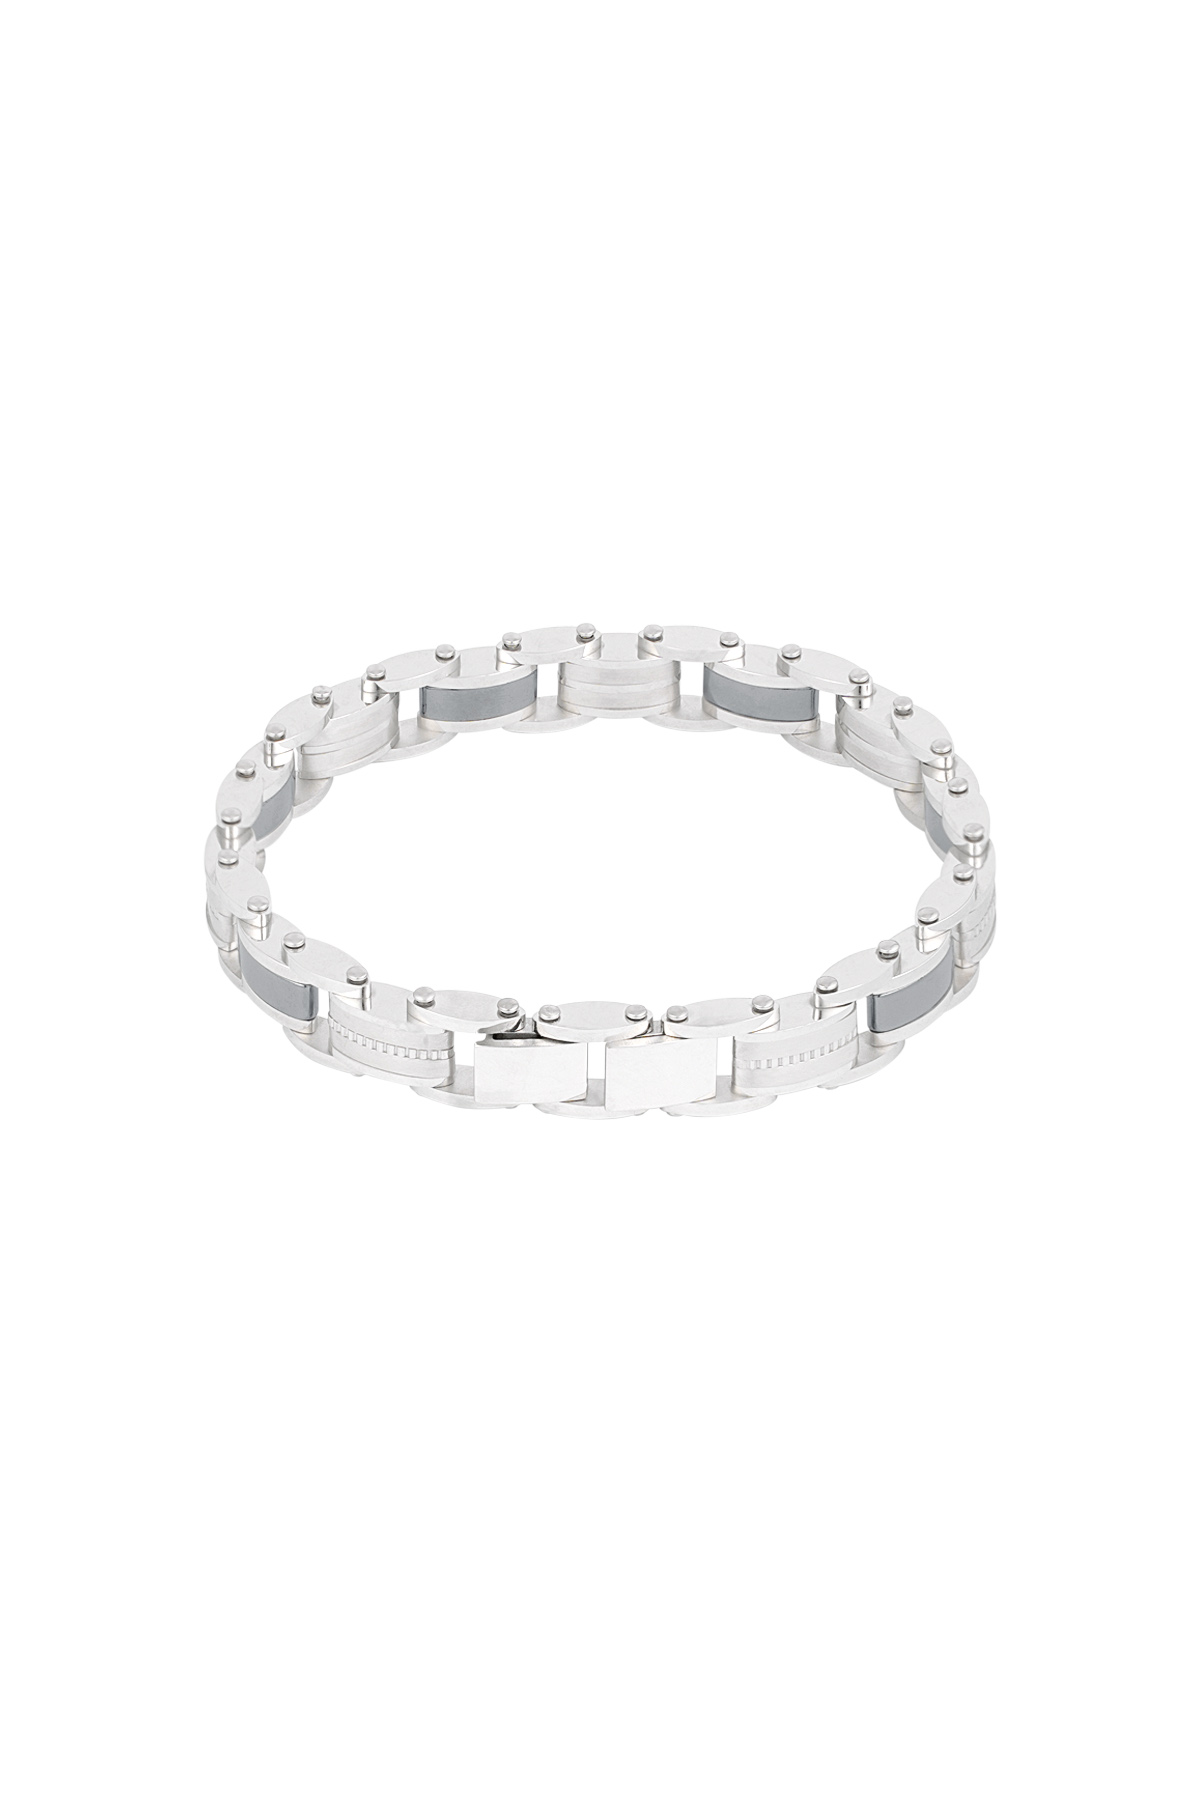 Linked steel men's bracelet - silver-1cm